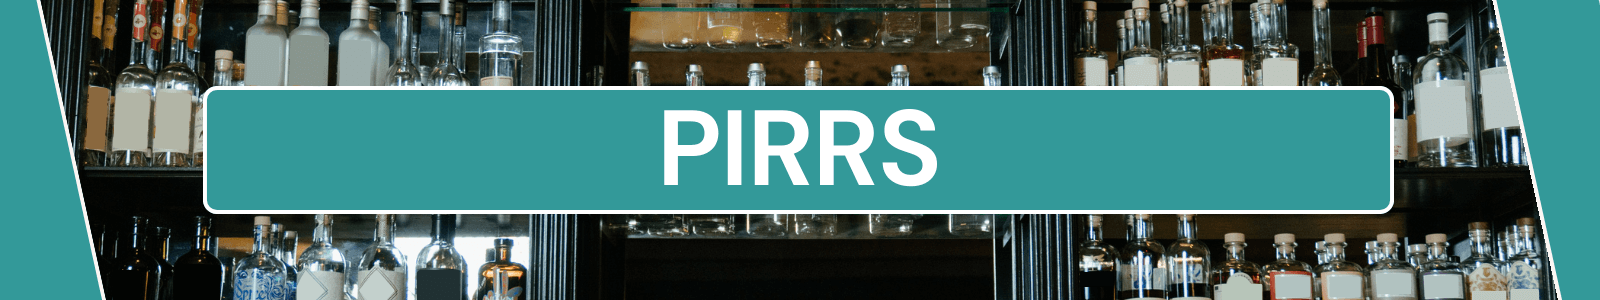 PIRRS Header New